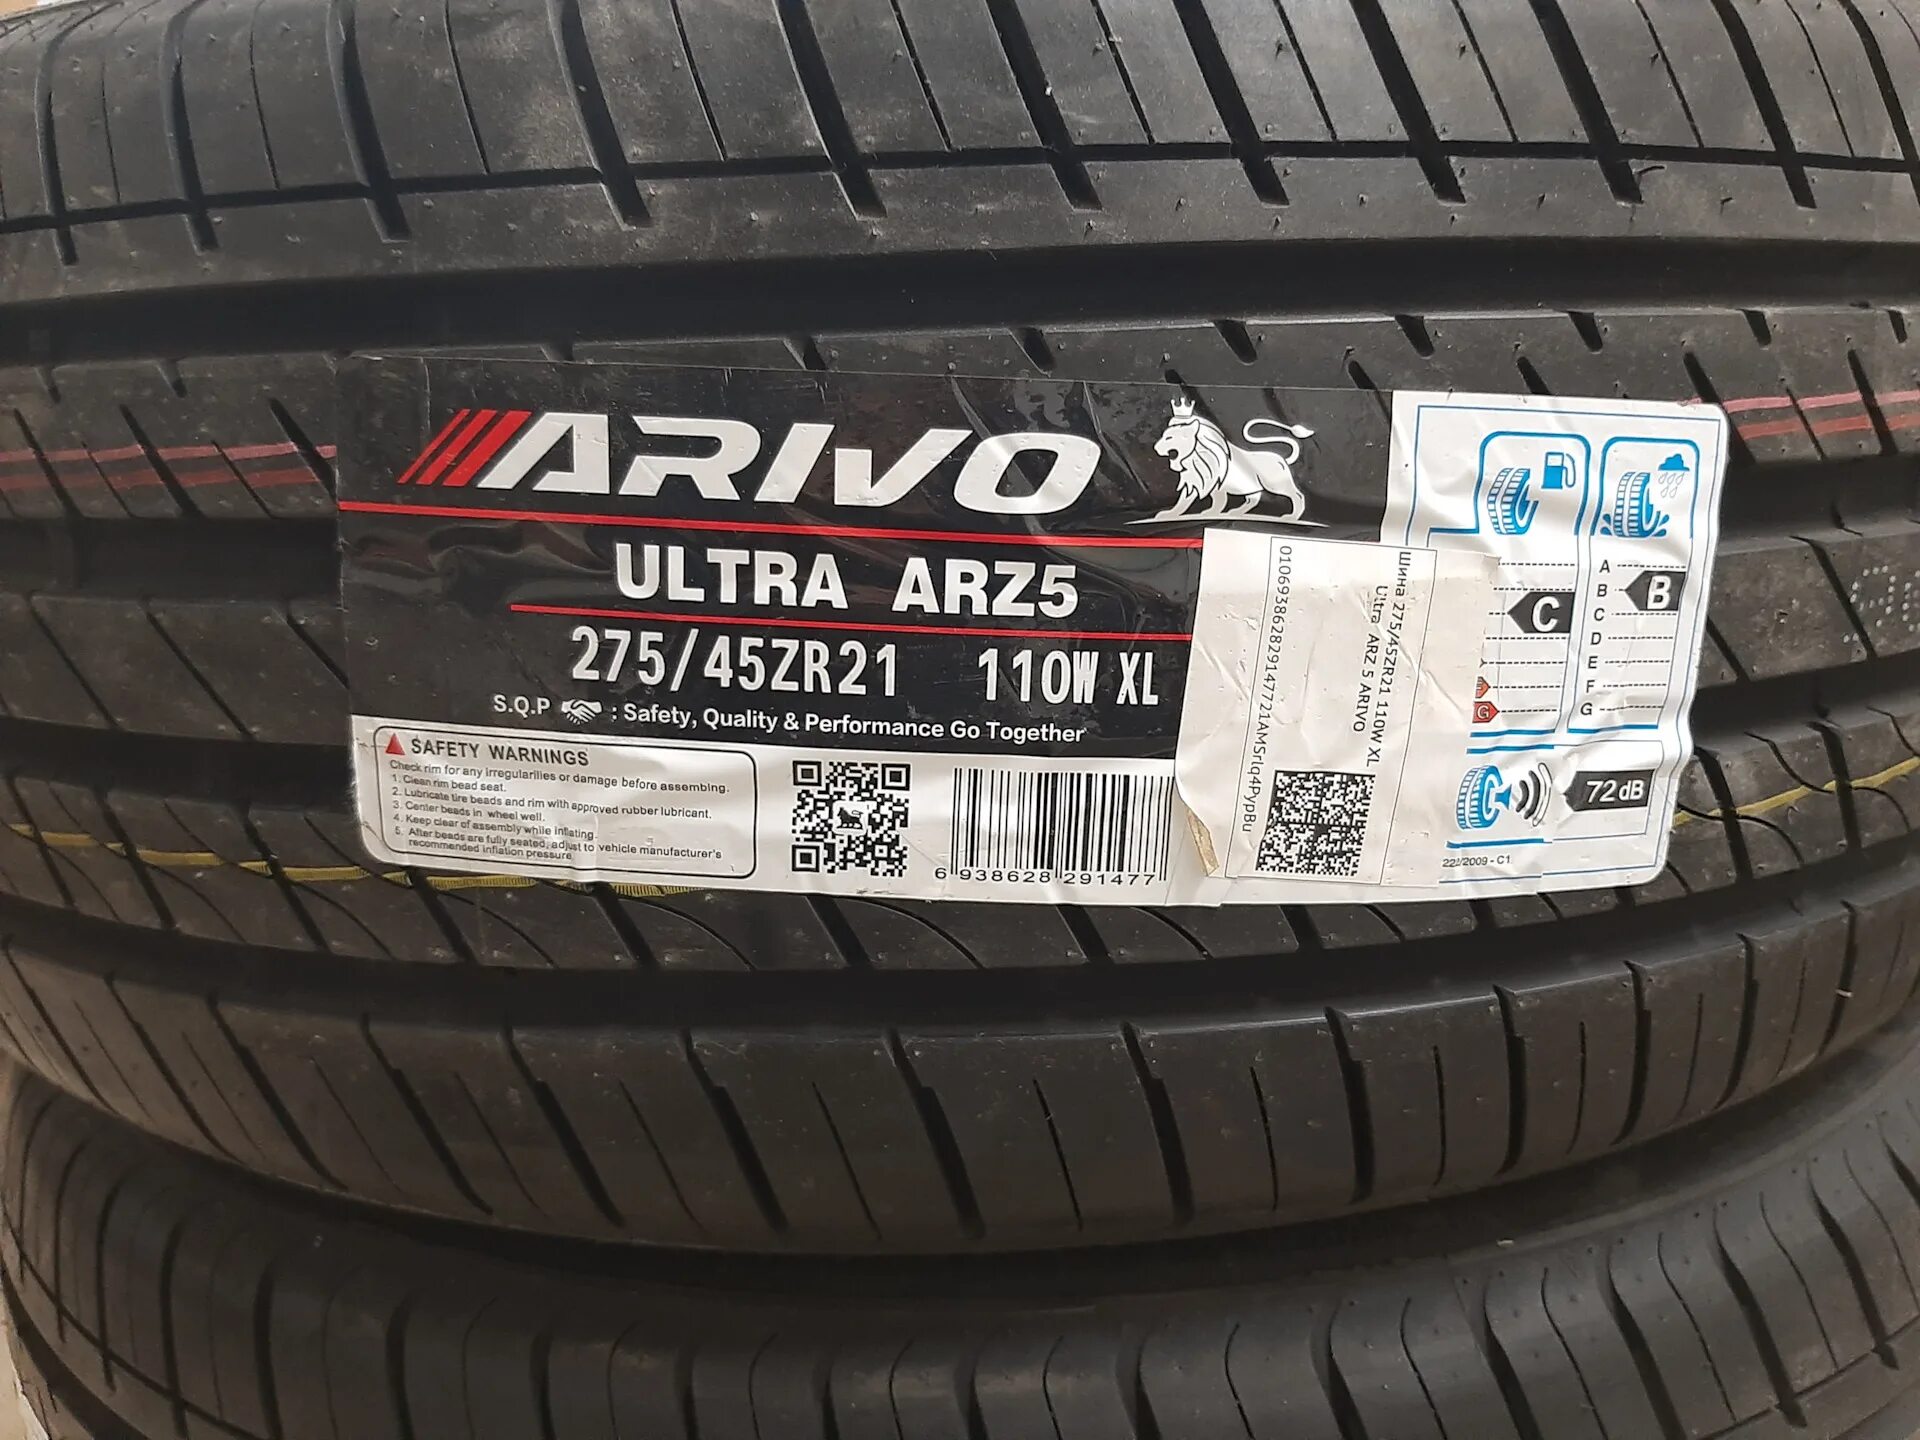 Arivo arz5 шины отзывы. Arivo Ultra arz5 275/45r21. Arivo Ultra arz5 шина. Arivo Ultra arz5 235/55 r19. Arivo шина летняя Ultra arz 5.